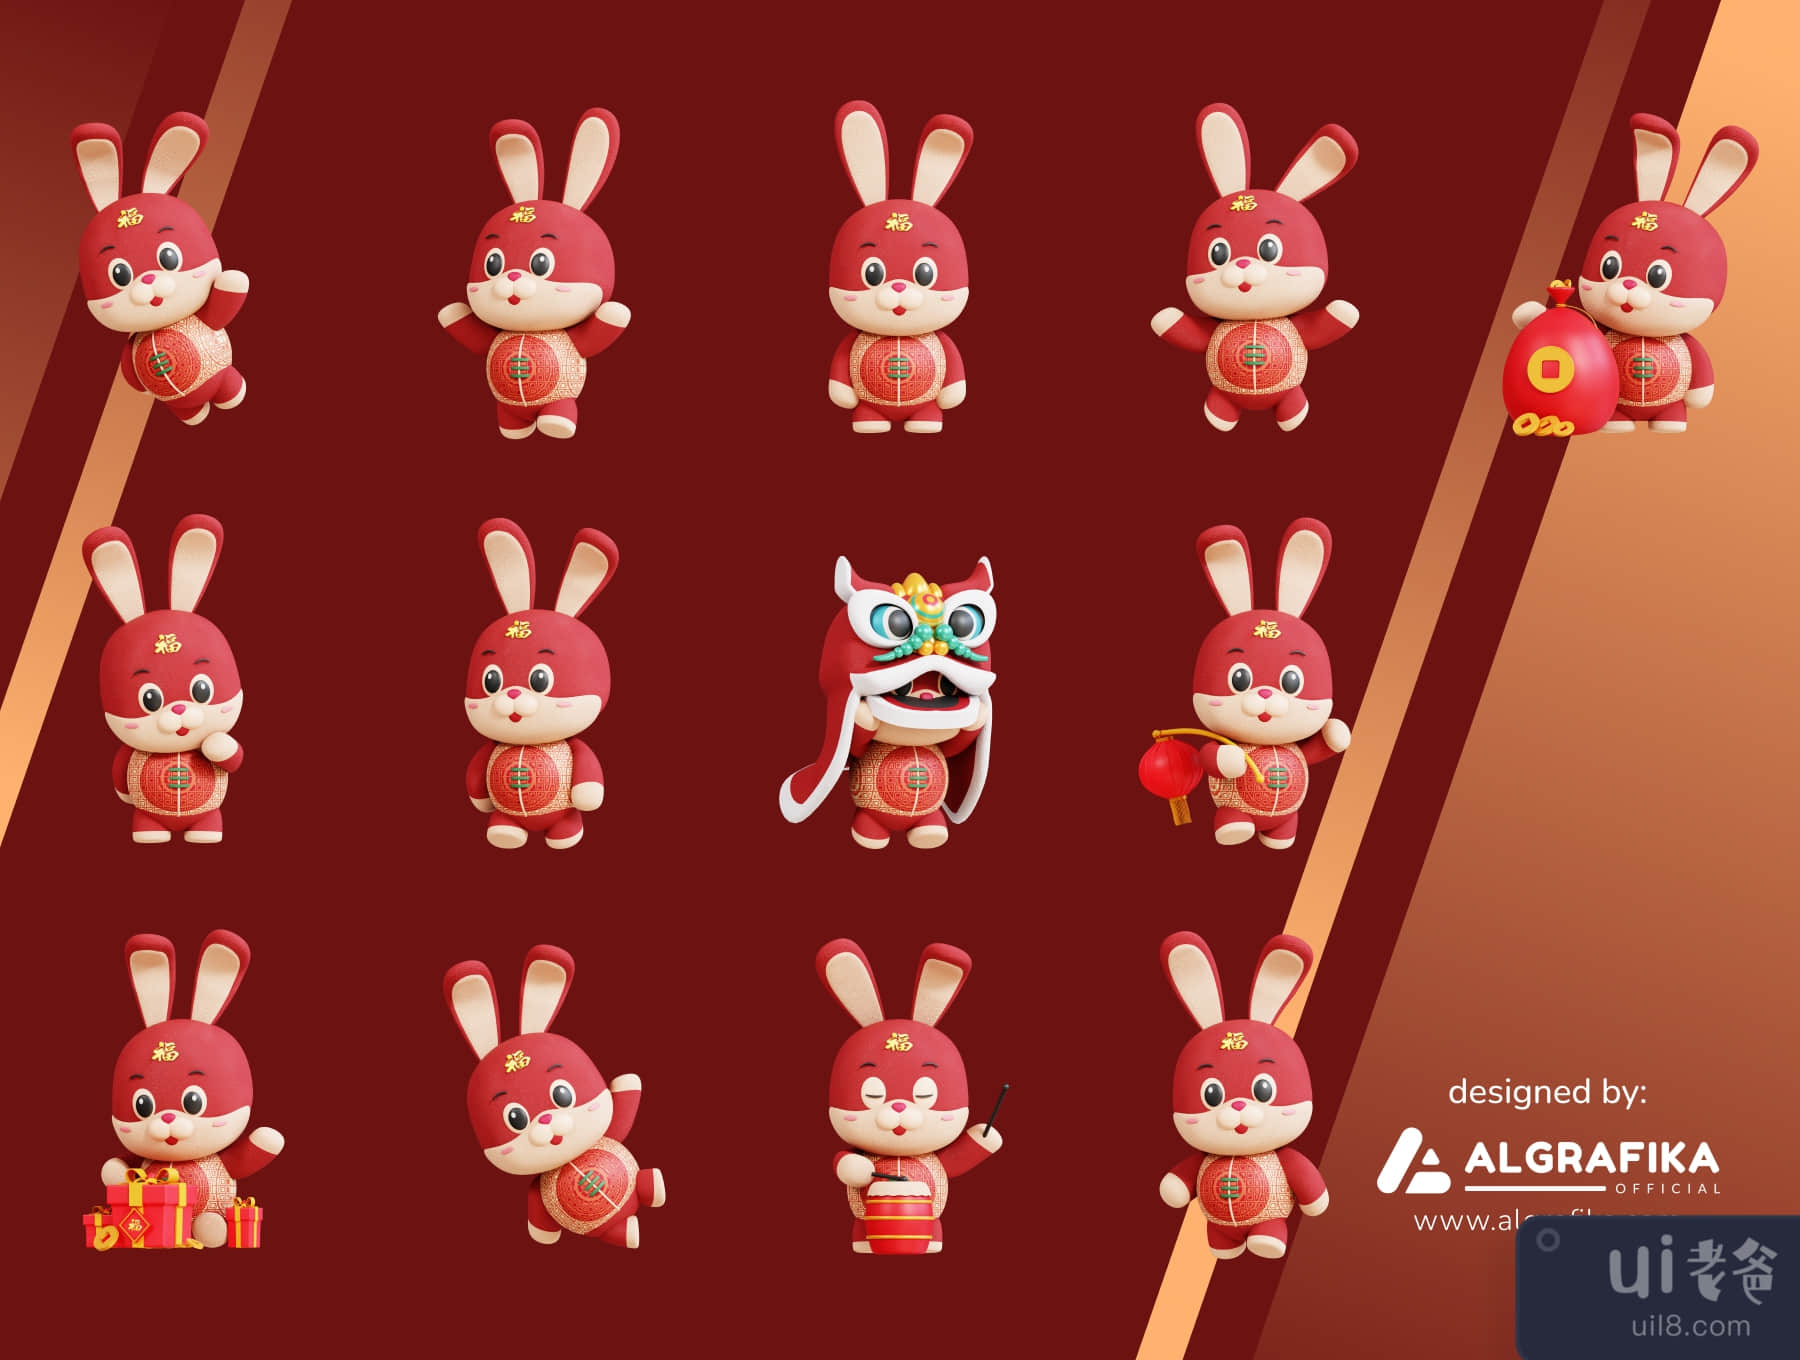 三维中国兔子吉祥物 (3D Chinese Rabbit Mascot)插图5